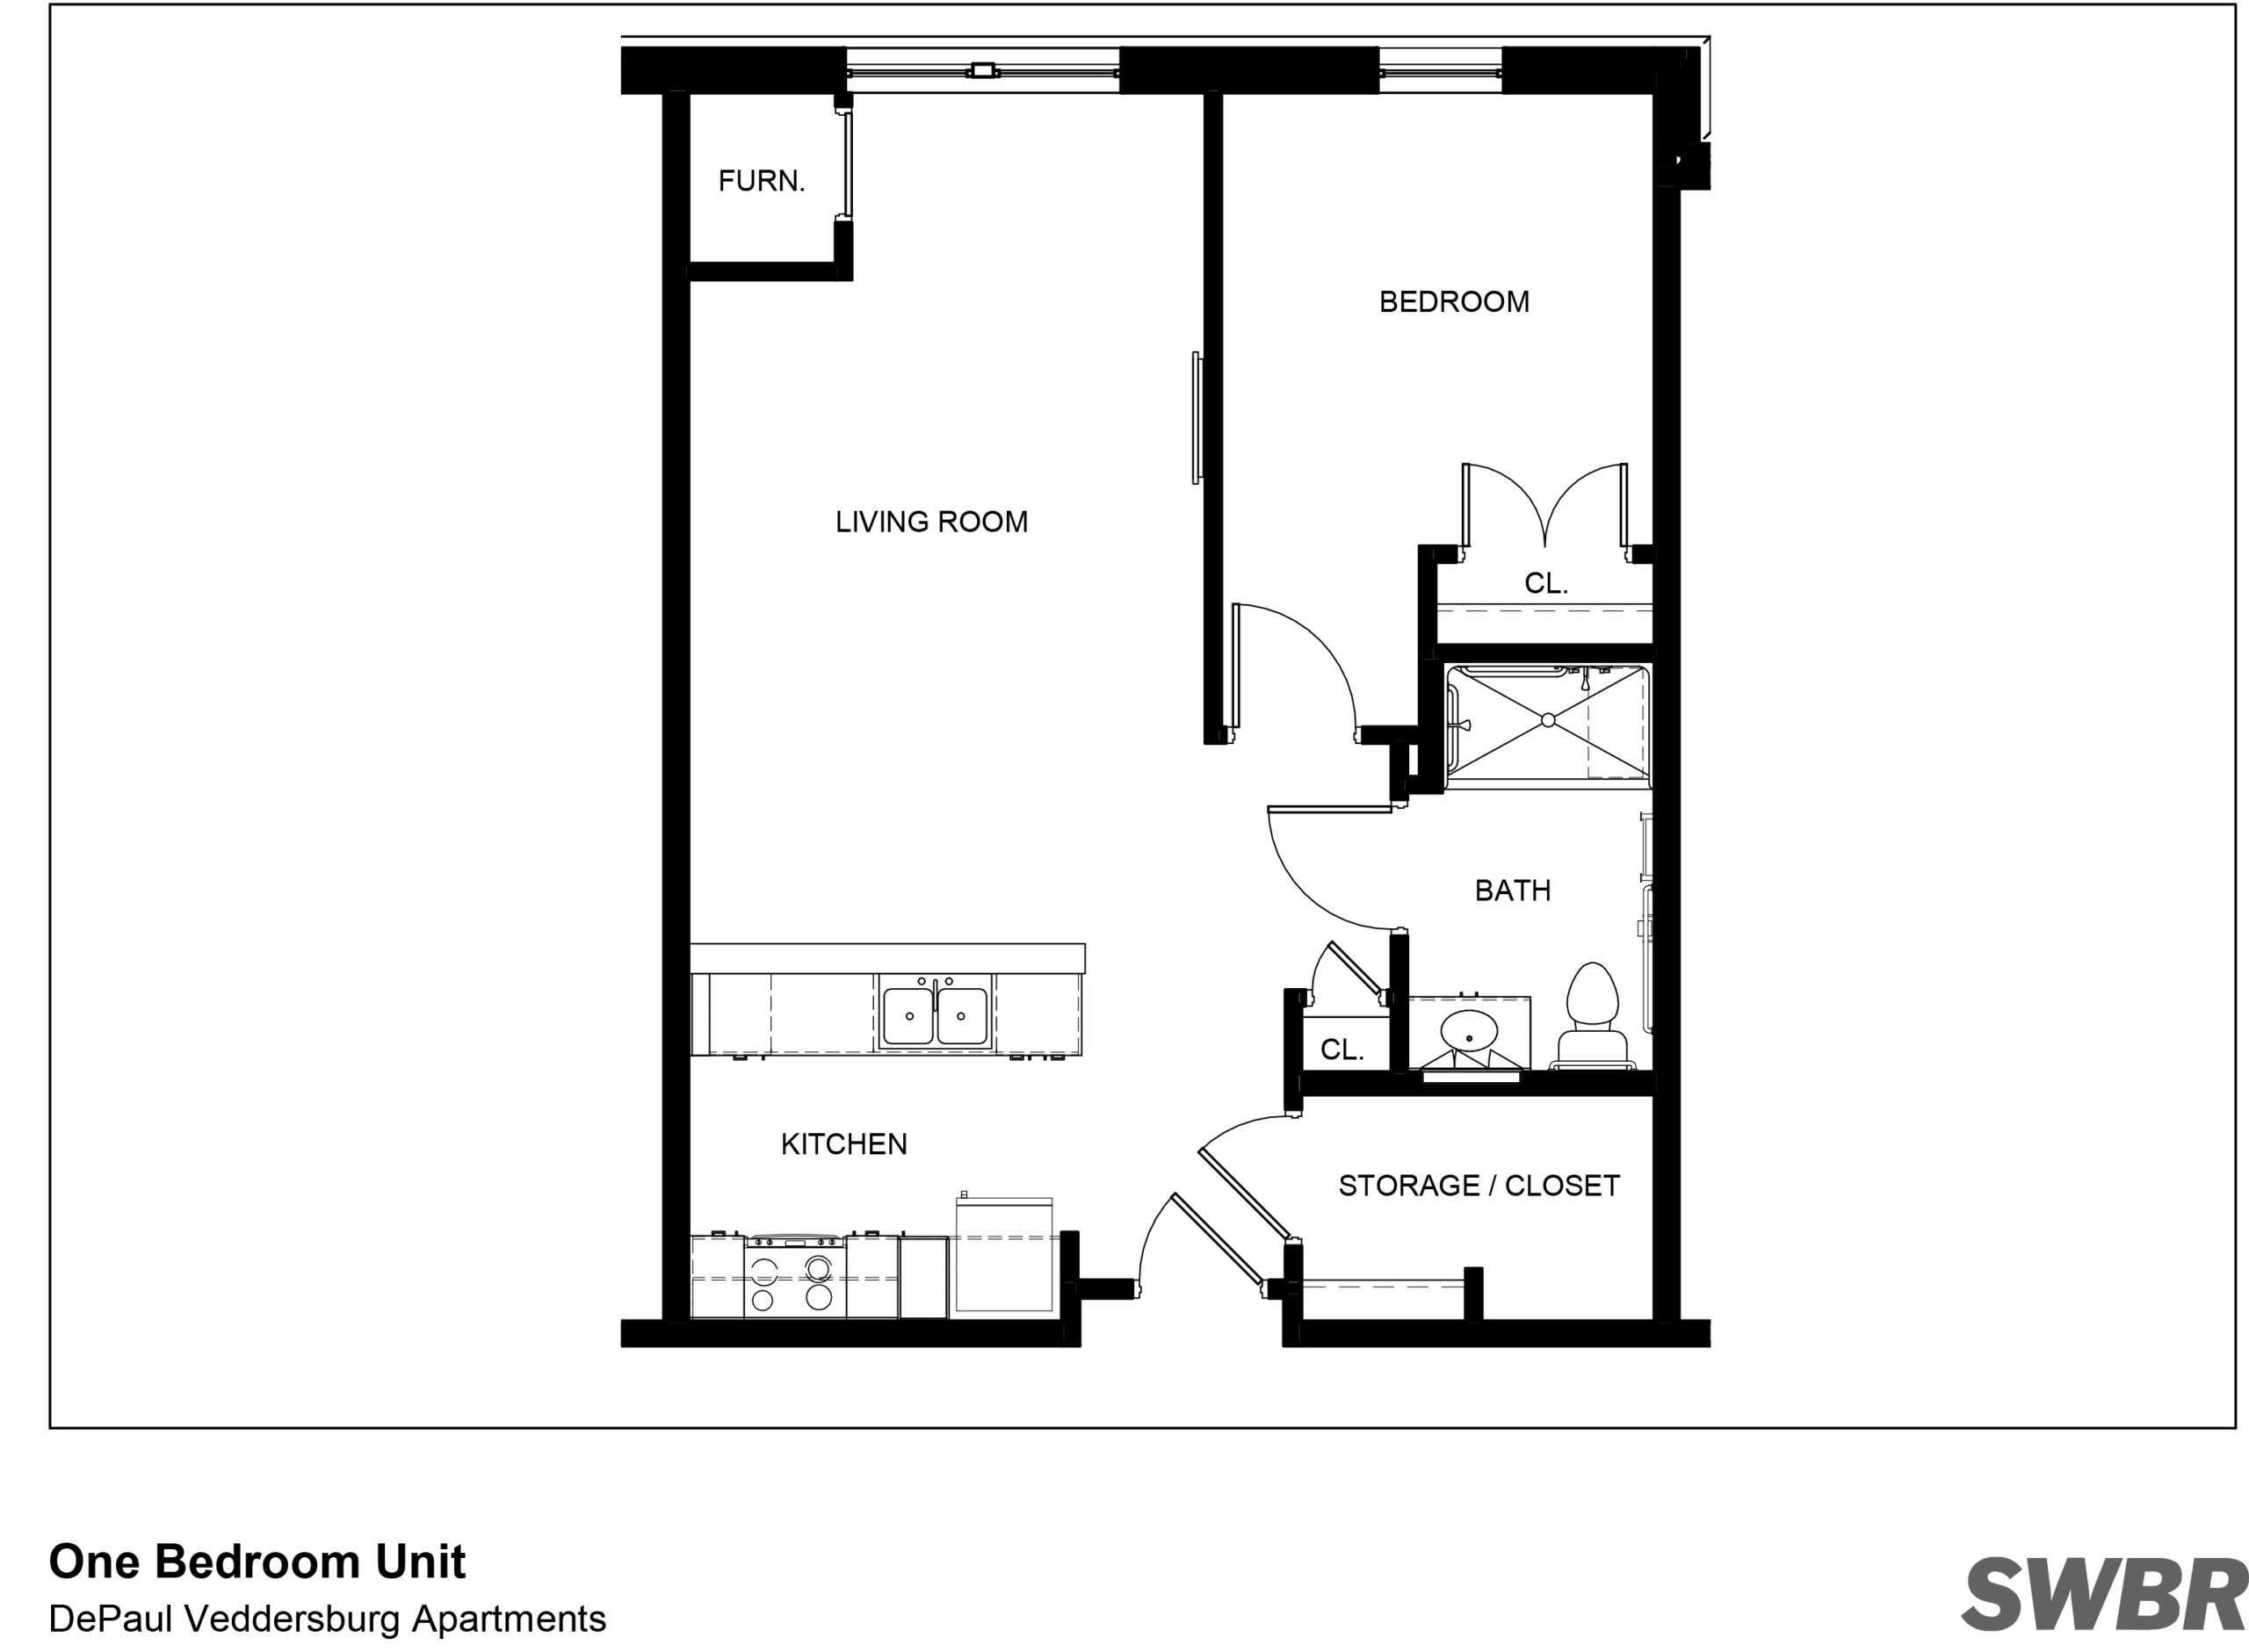 Veddersburg Apartments One Bedroom Floor Plan